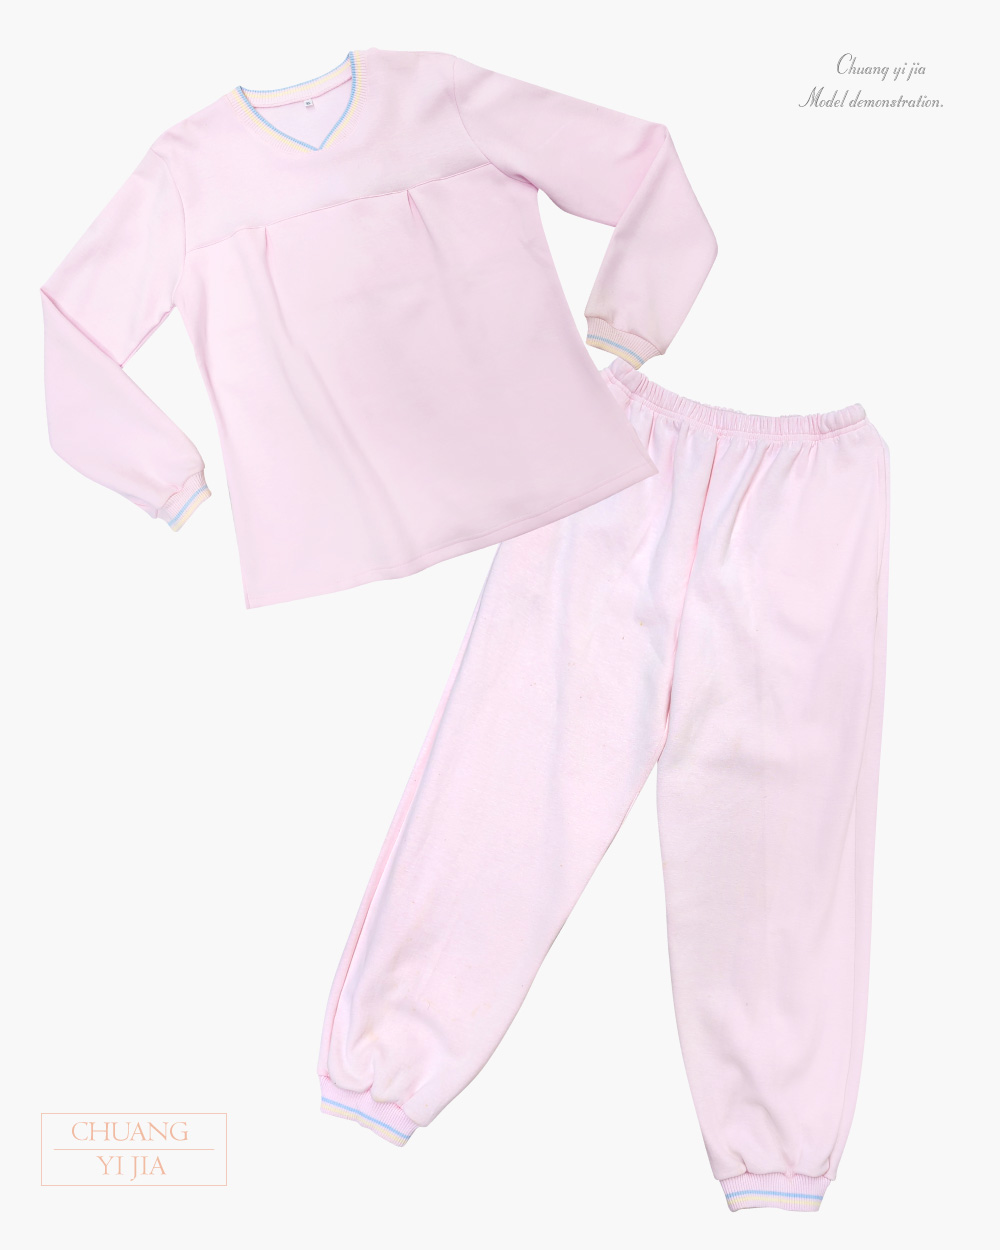 創e家團體服-健檢服-V領-粉紅 正面套裝平拍